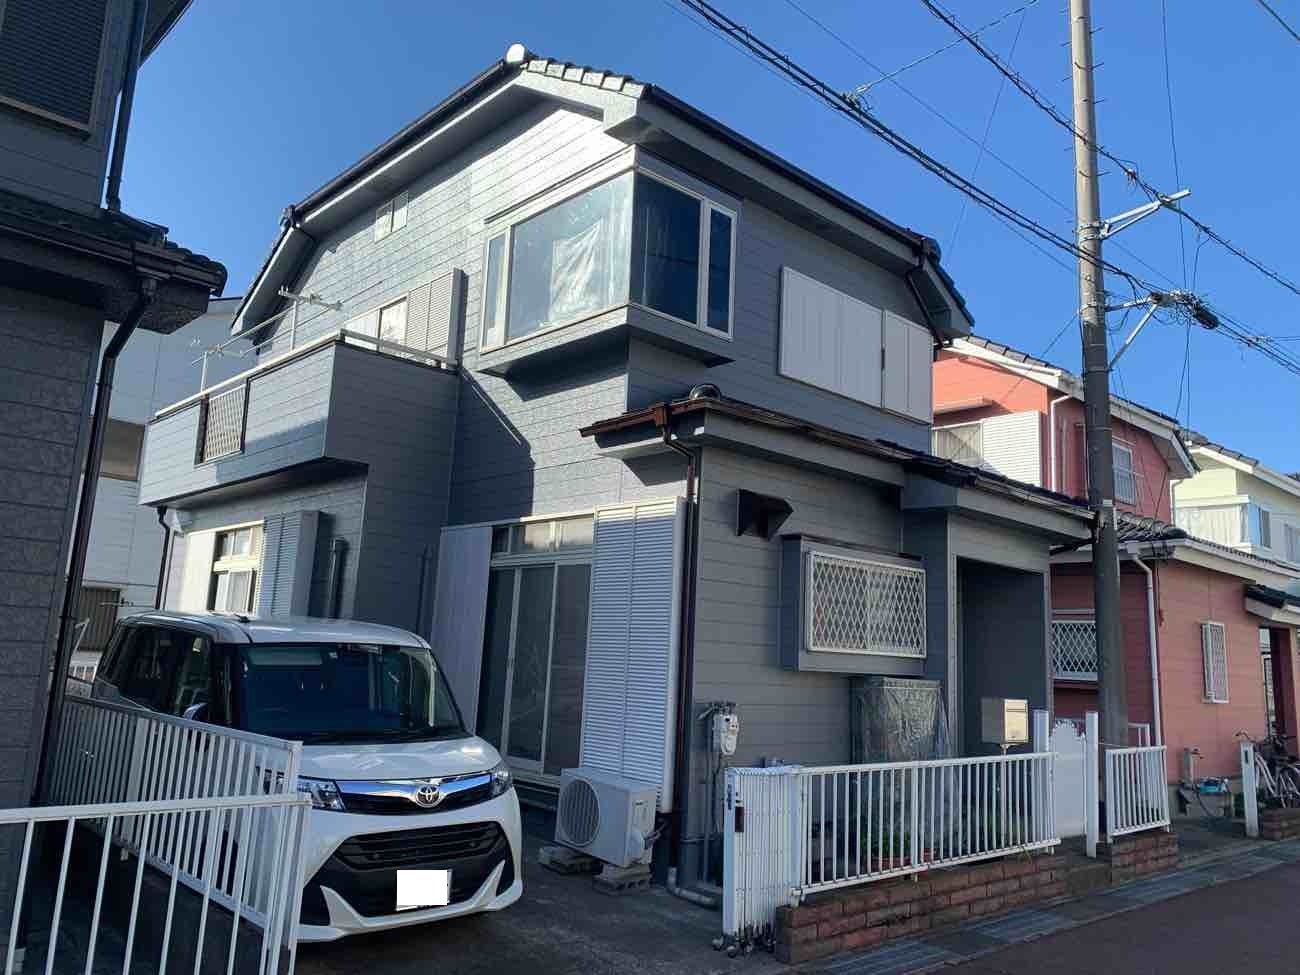 【埼玉県三郷市】S様邸外壁屋根塗装工事が完了しました。ハイパービルロックセラ 画像